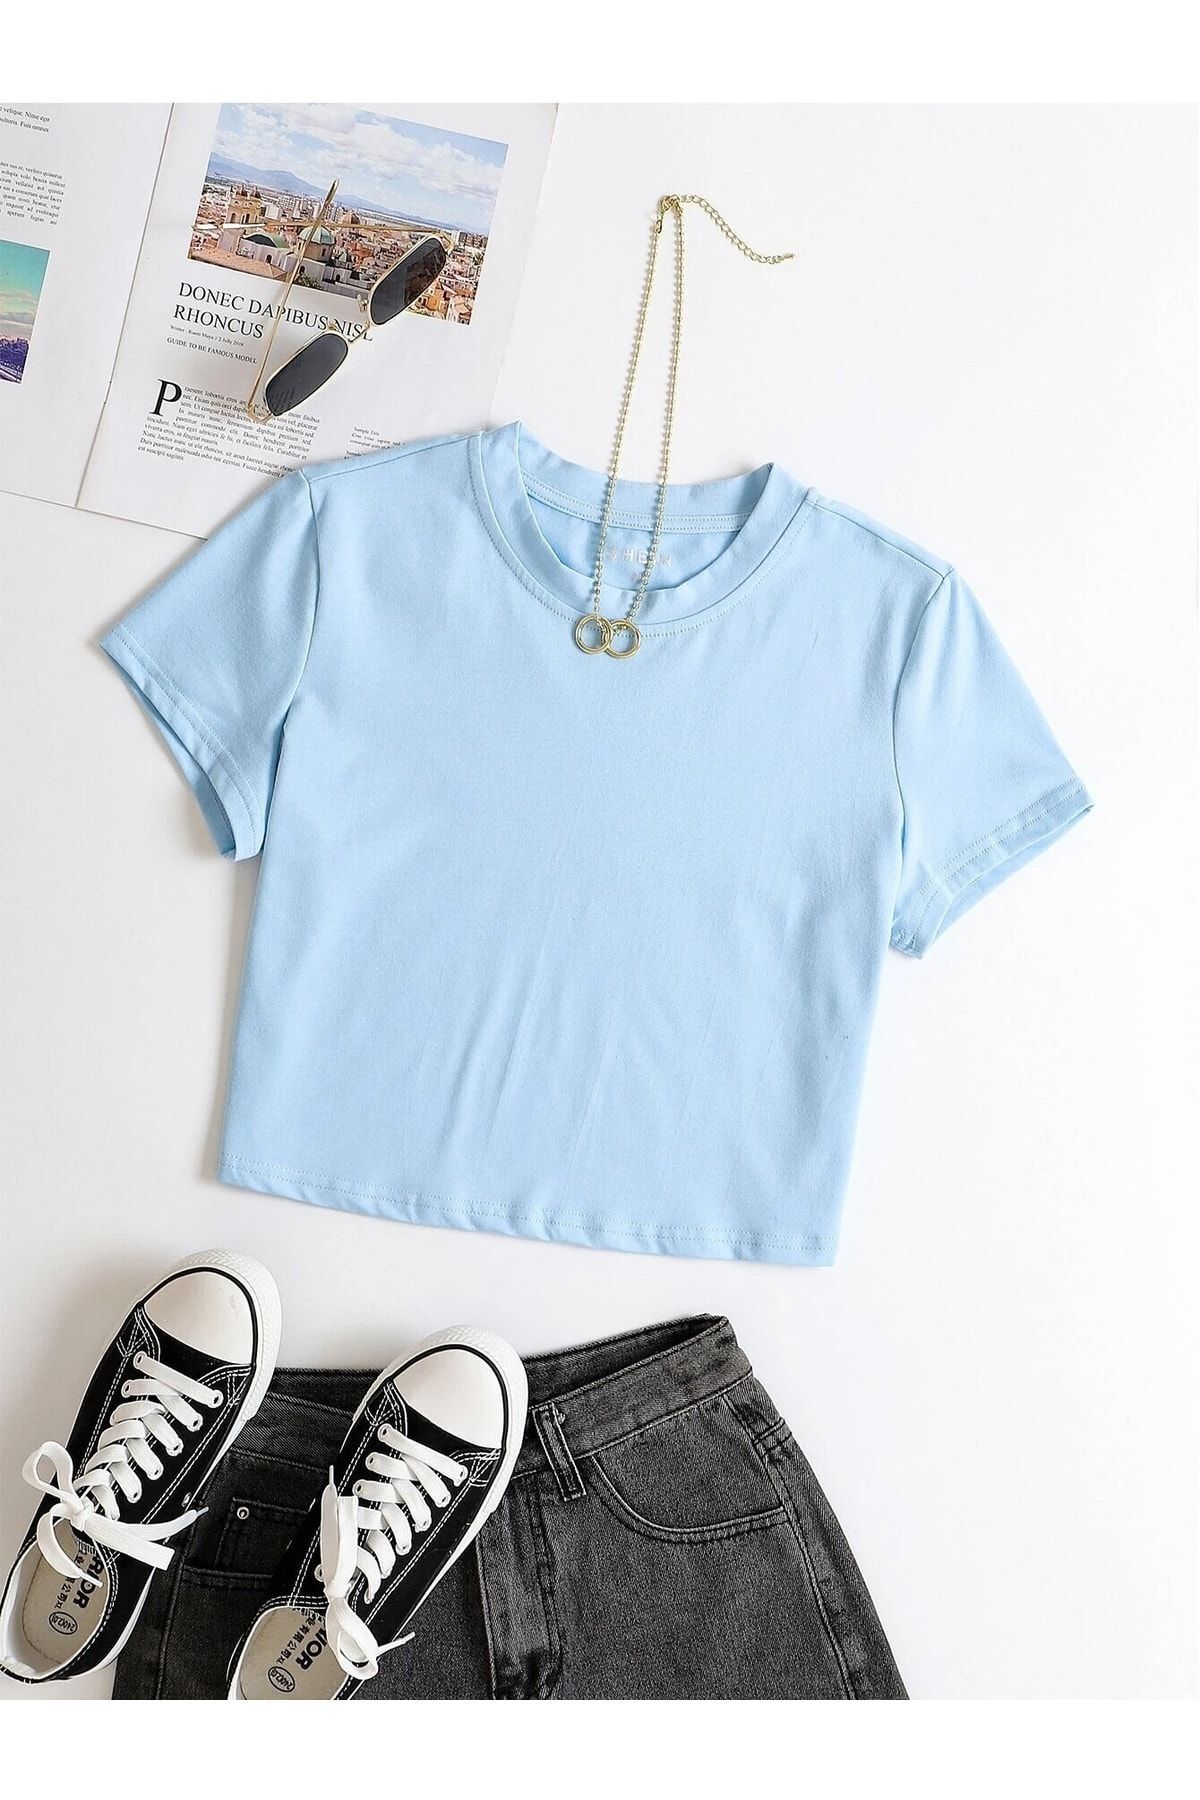 DAXİS Sportwear Company Renkli Oversize Crop Tshirt